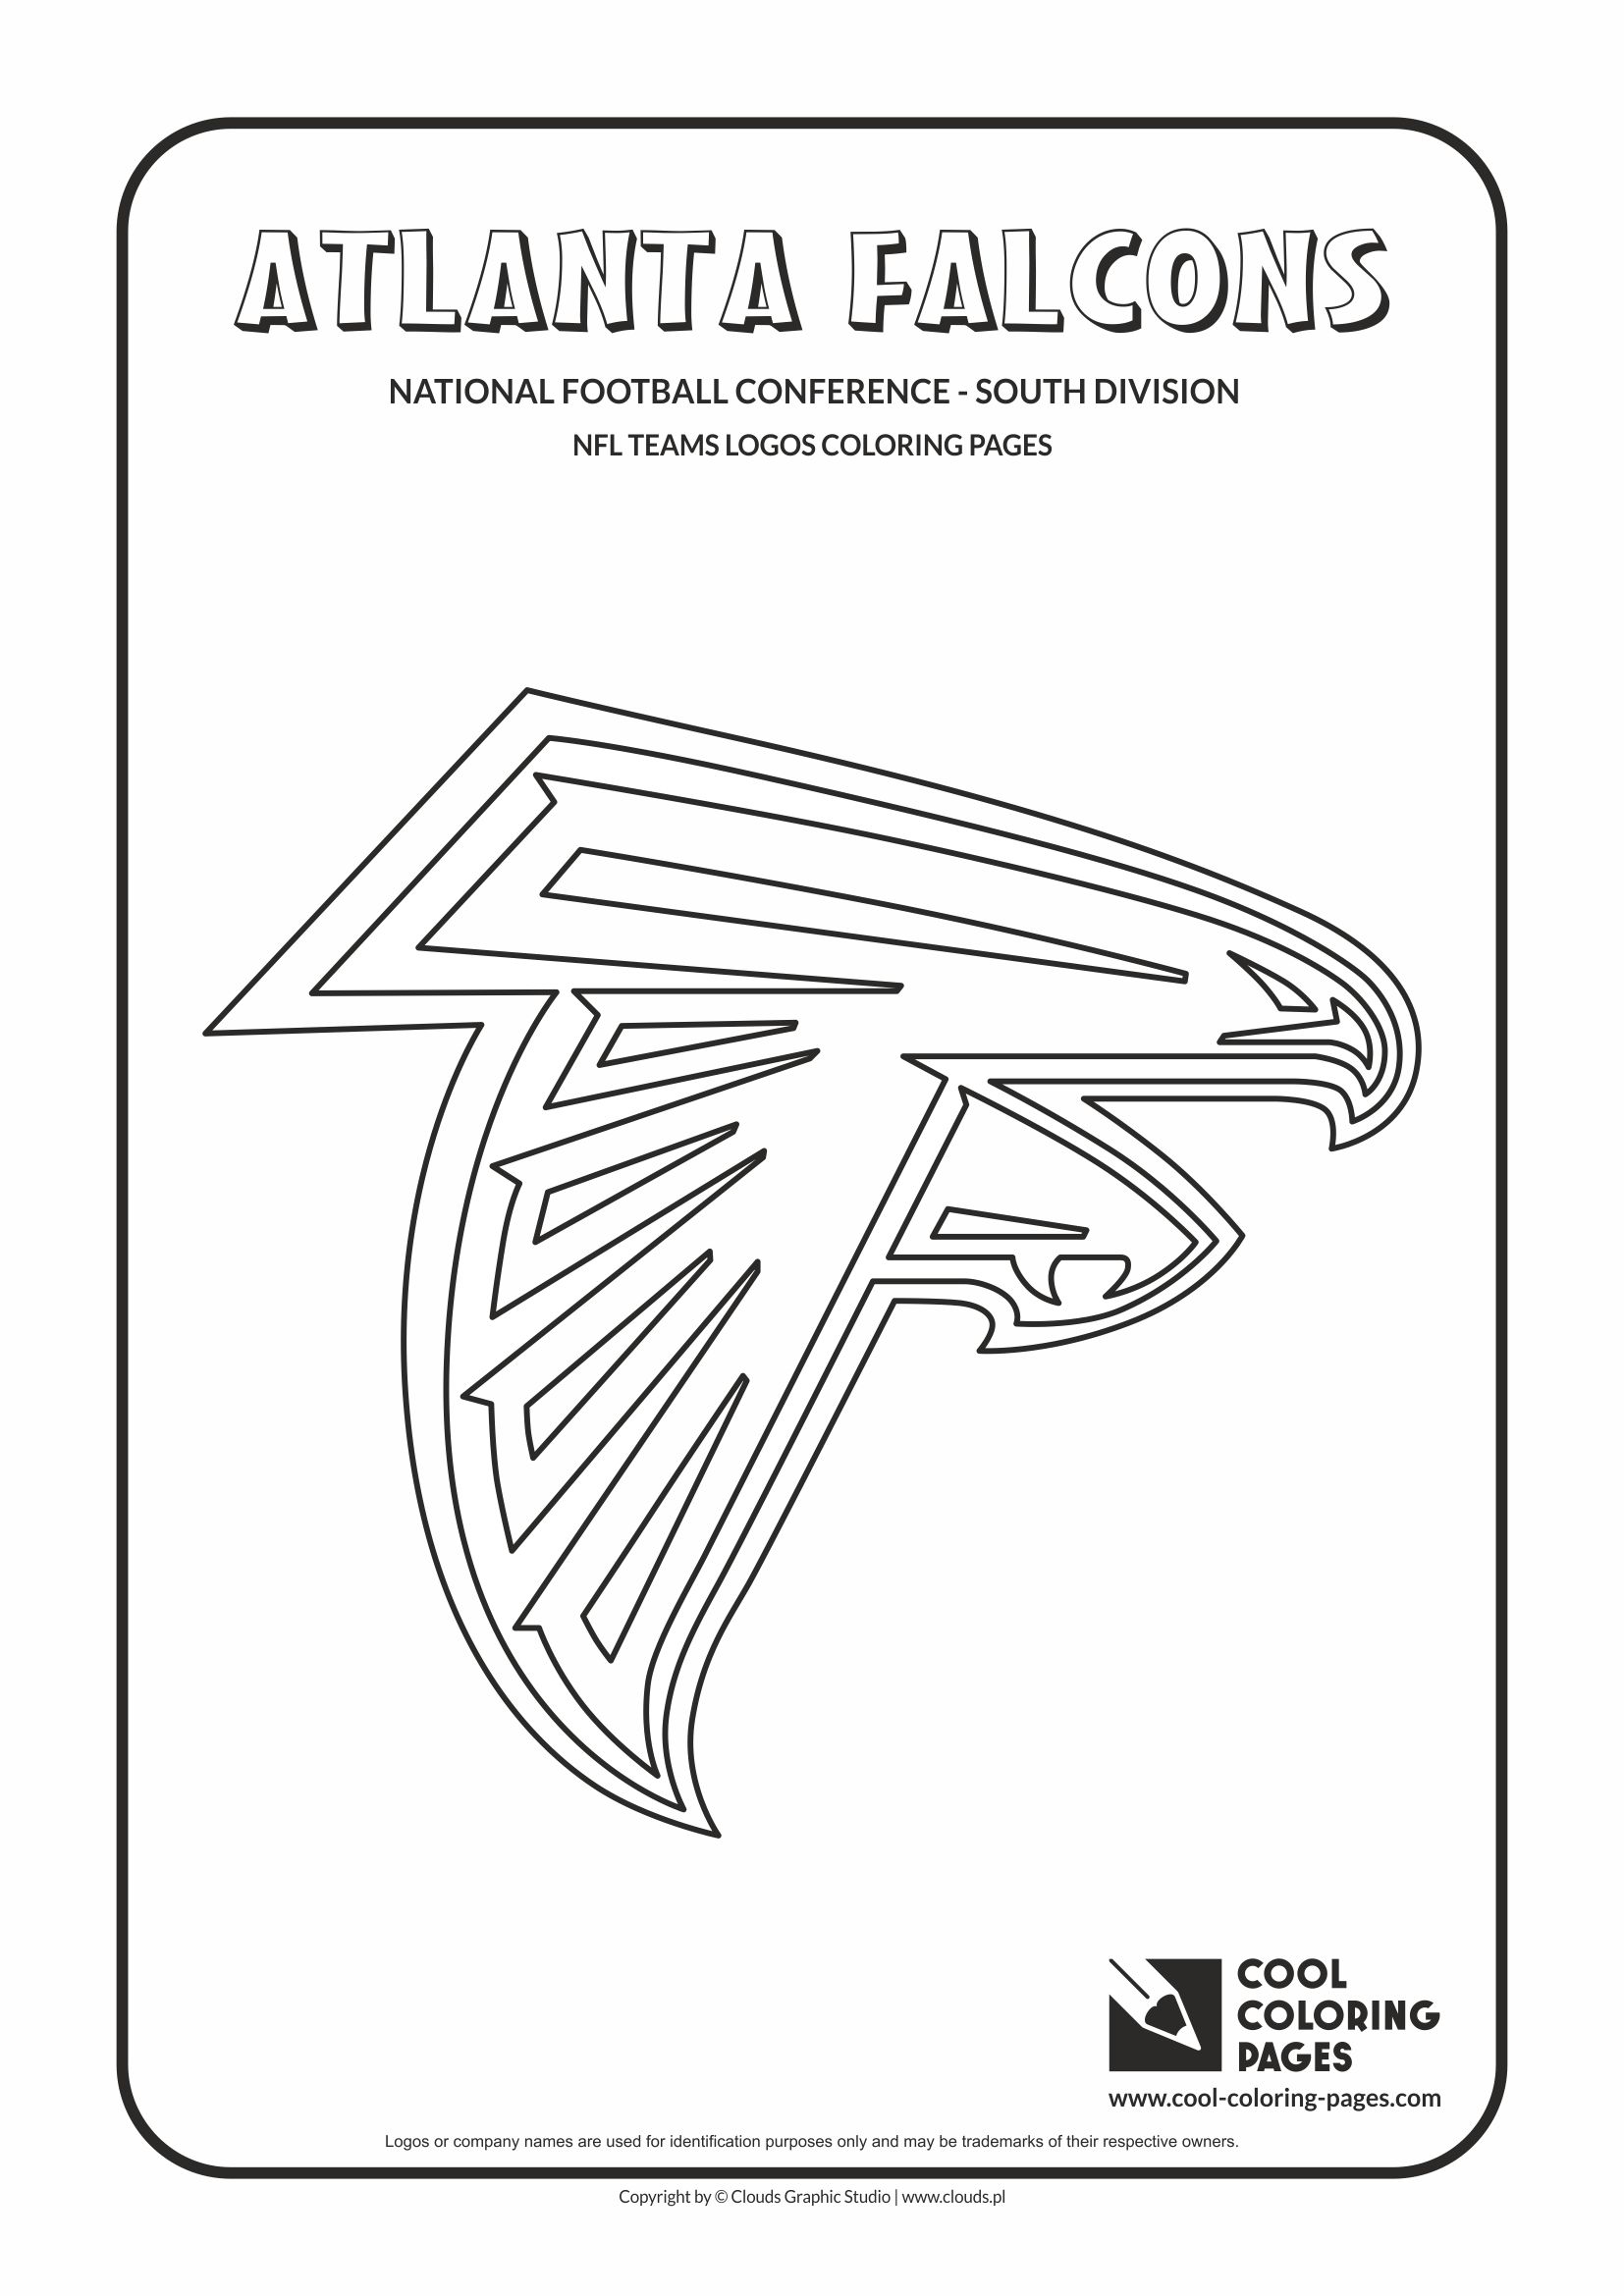 Cool Coloring Pages Atlanta Falcons - NFL American football teams logos ...